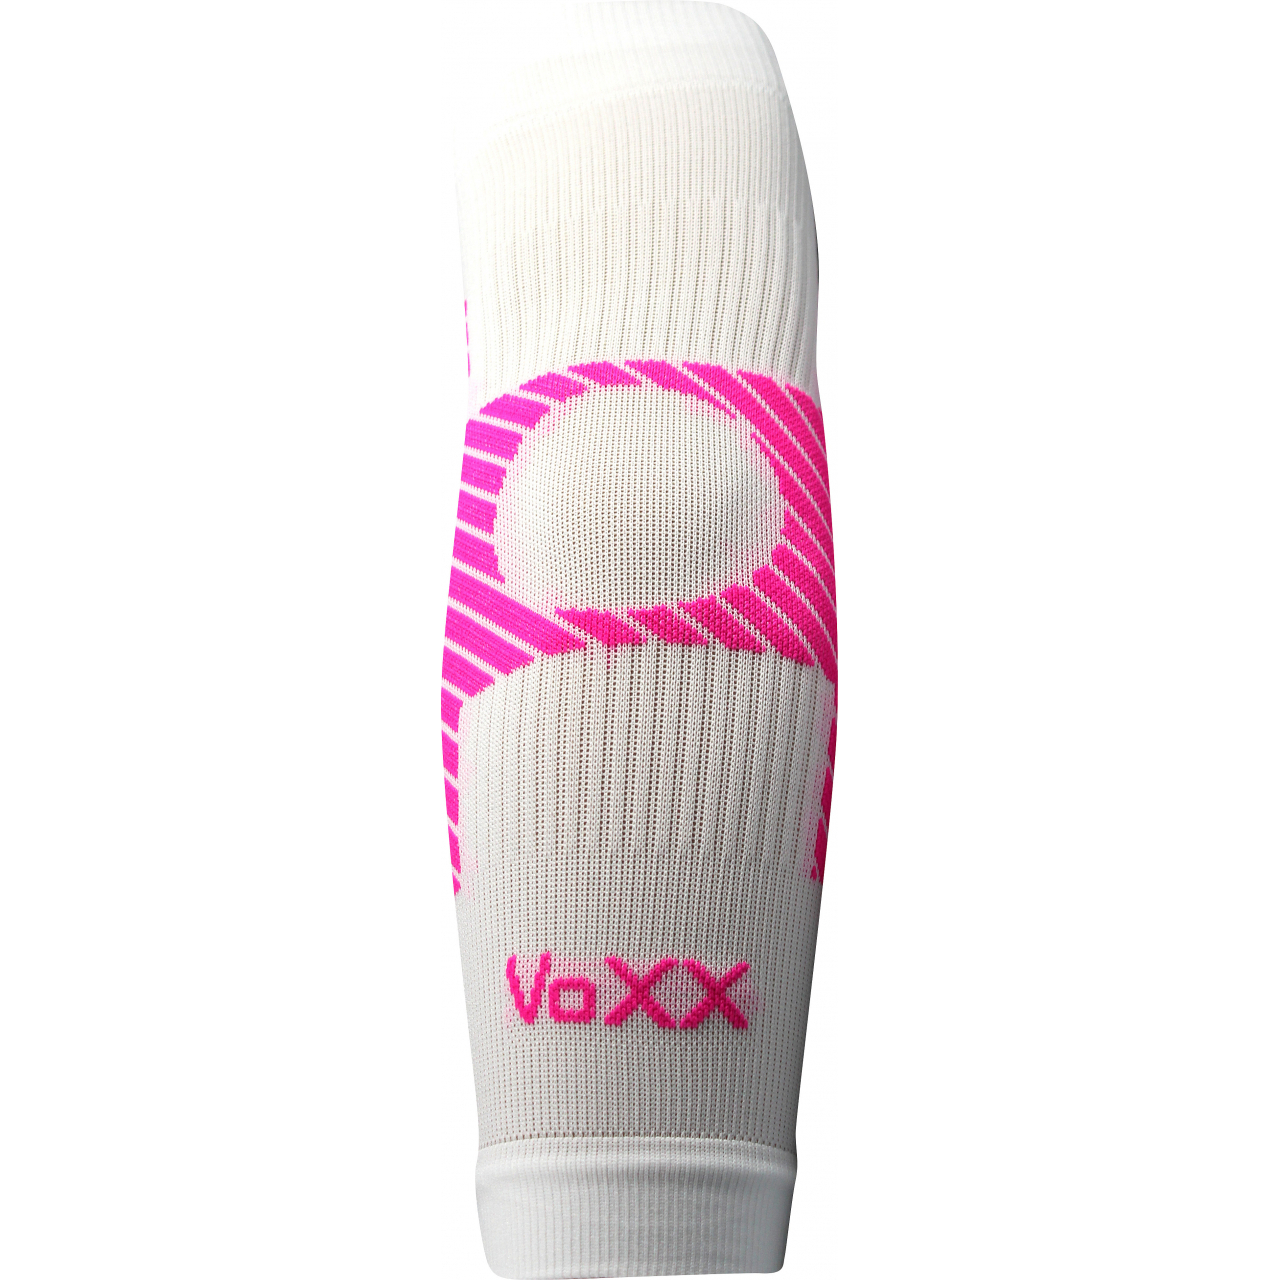 Návlek kompresní Voxx Protect loket - bílý-růžový, S/M